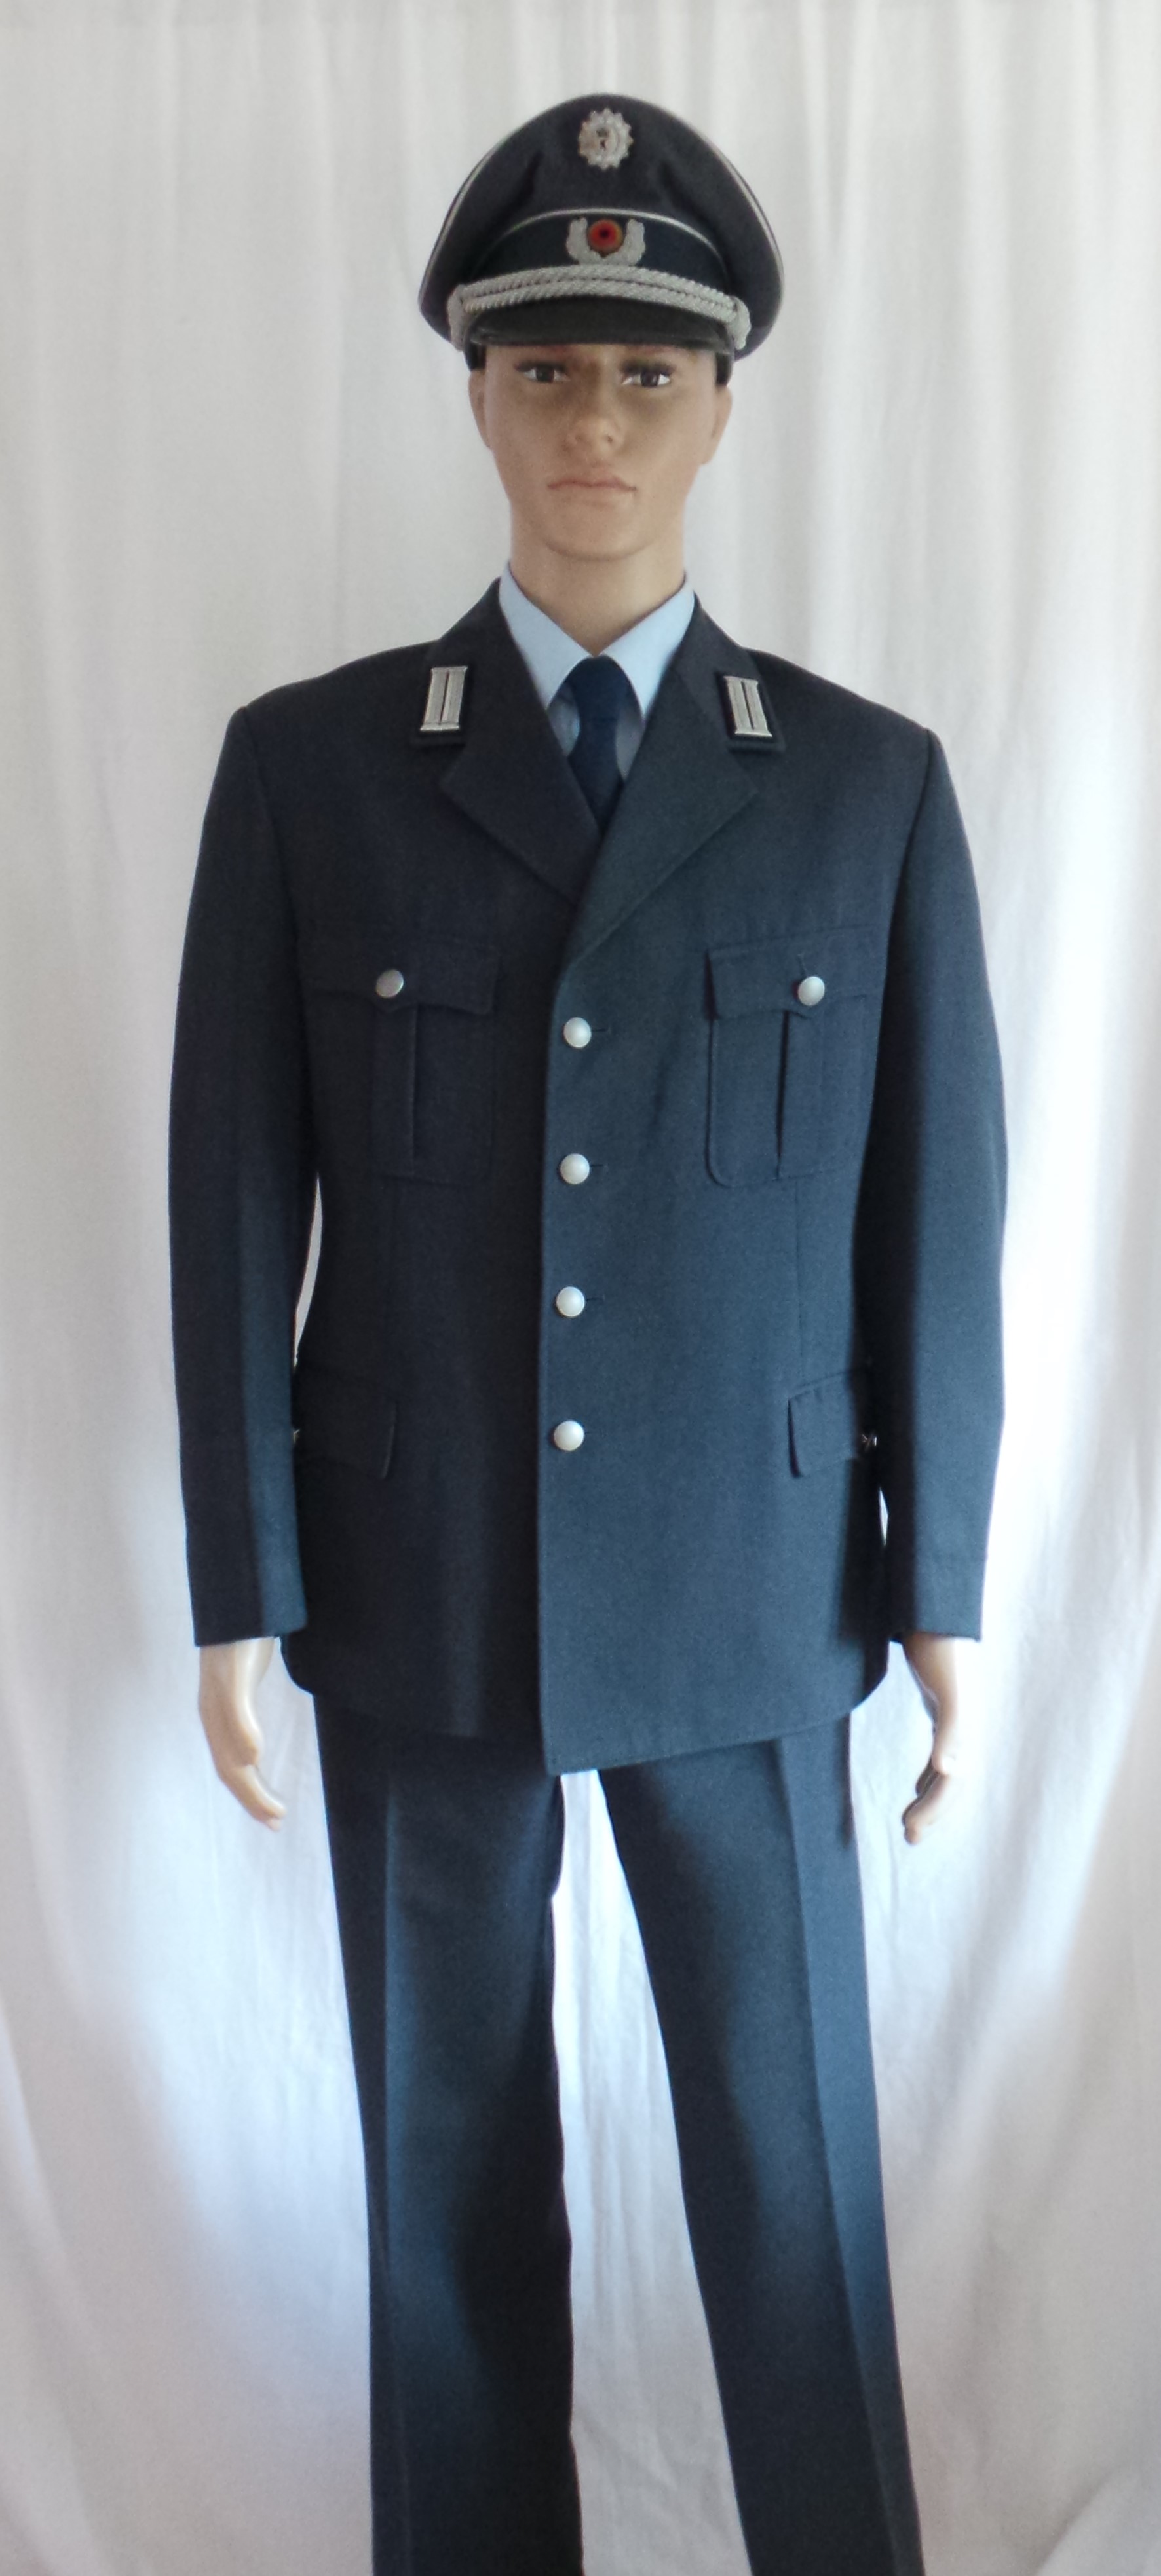 02 Schutzpolizei Service Dress